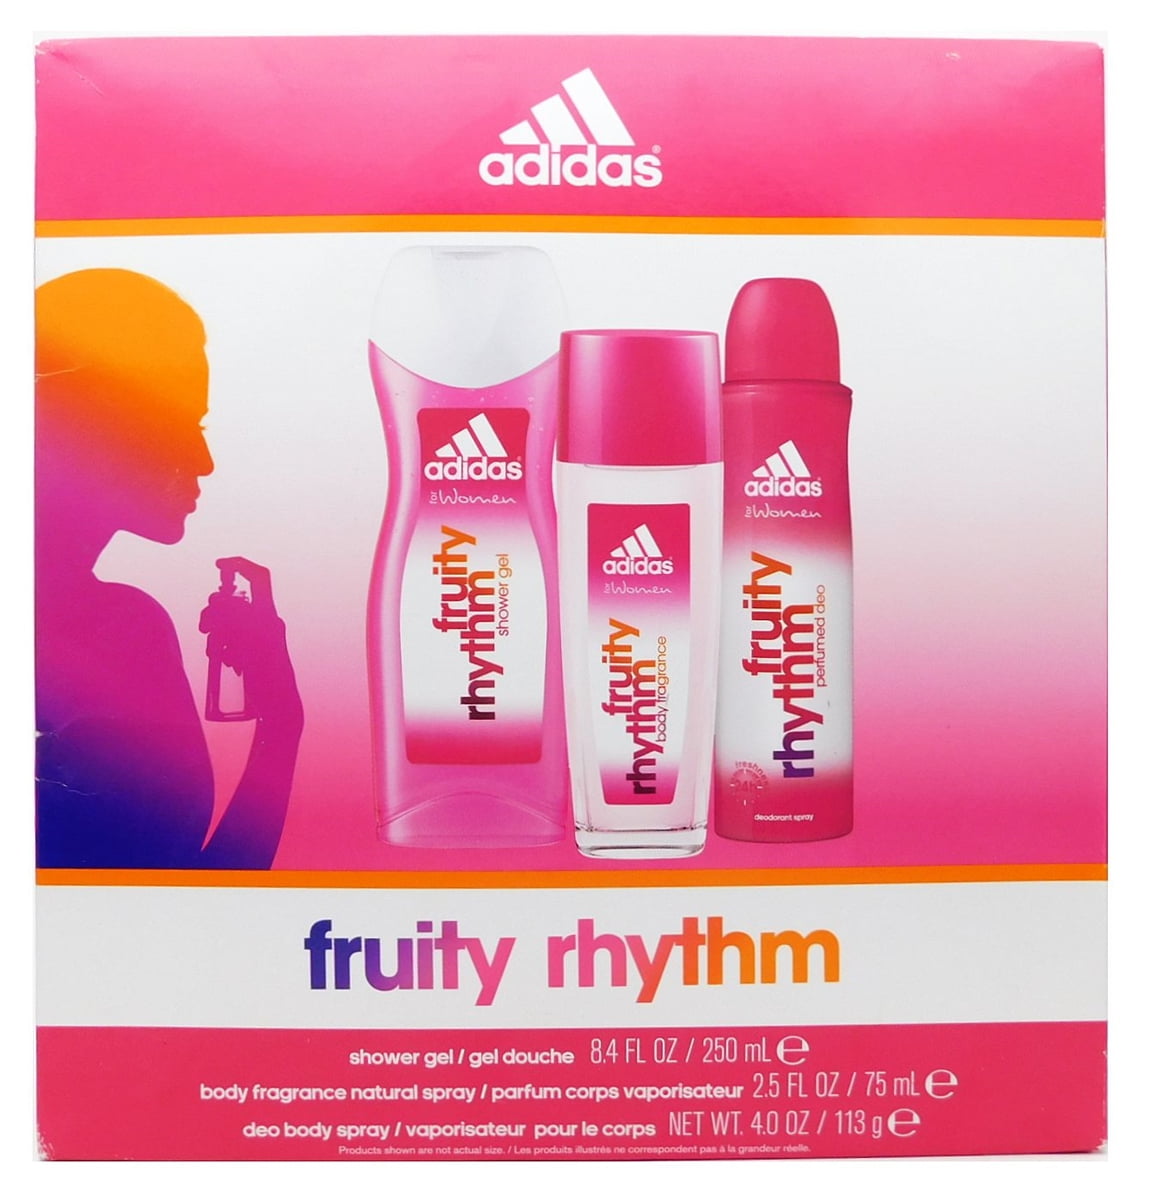 adidas fruity rhythm shower gel